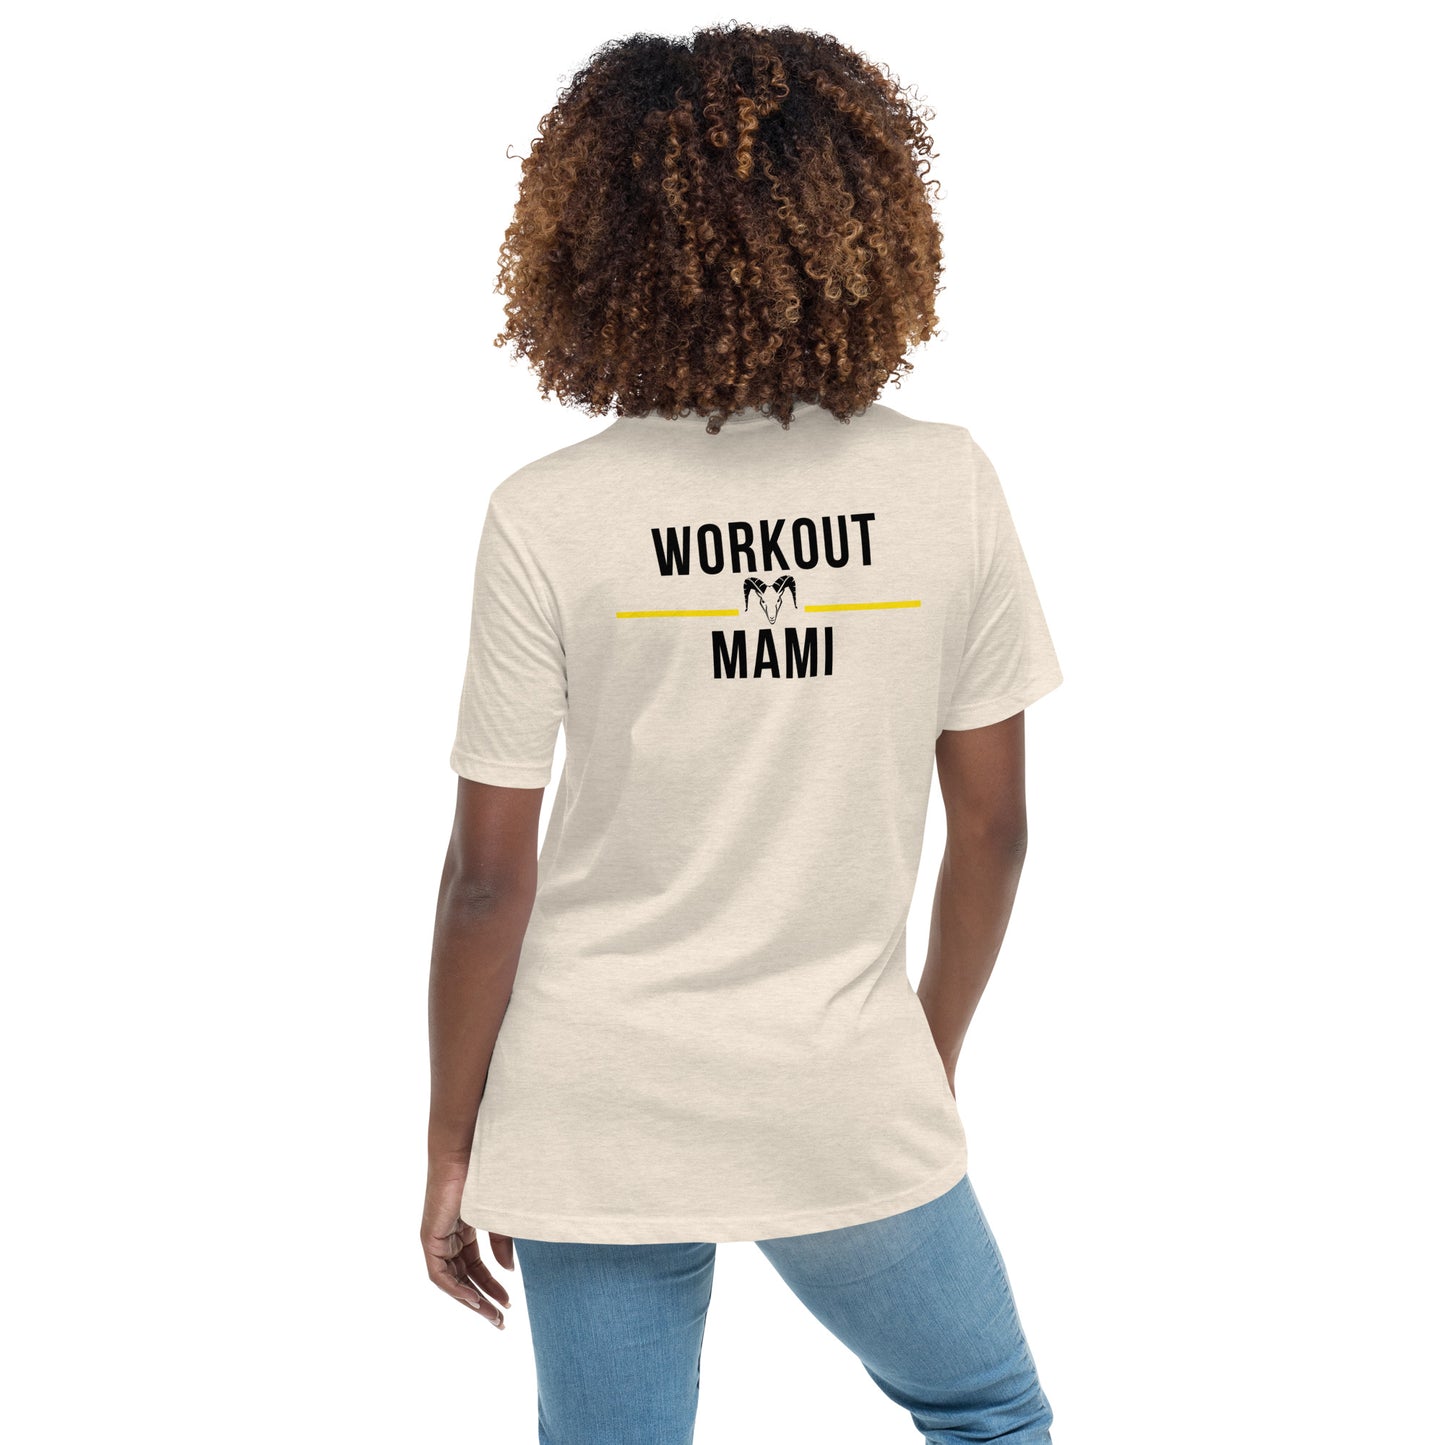 Workout Mami T Shirts